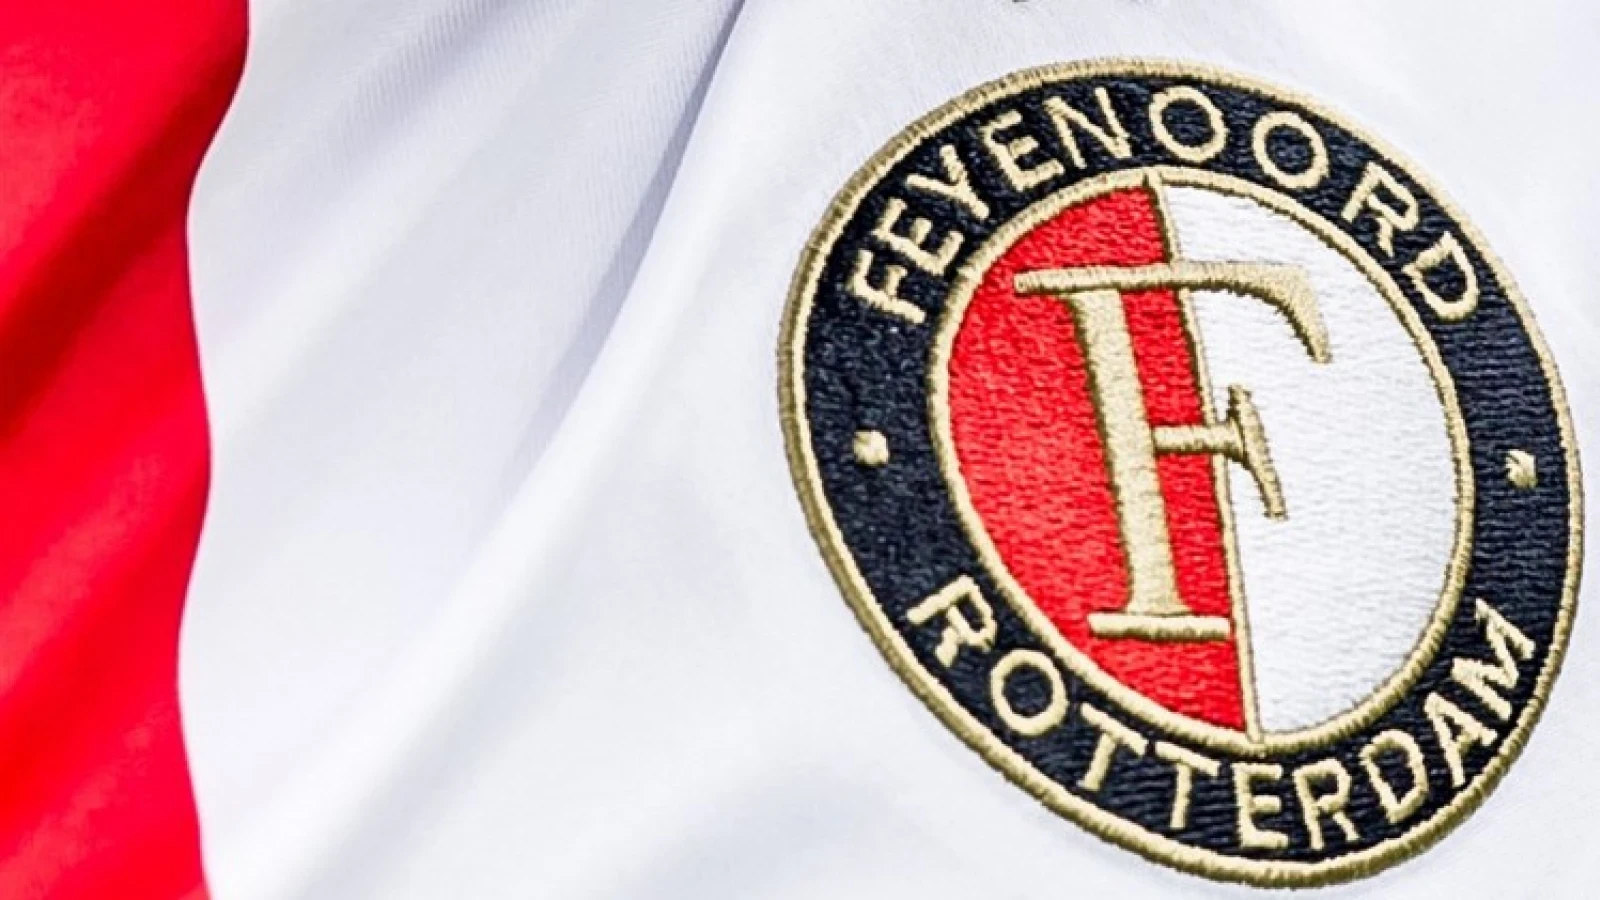 Uitduel Jong Feyenoord uitgesteld